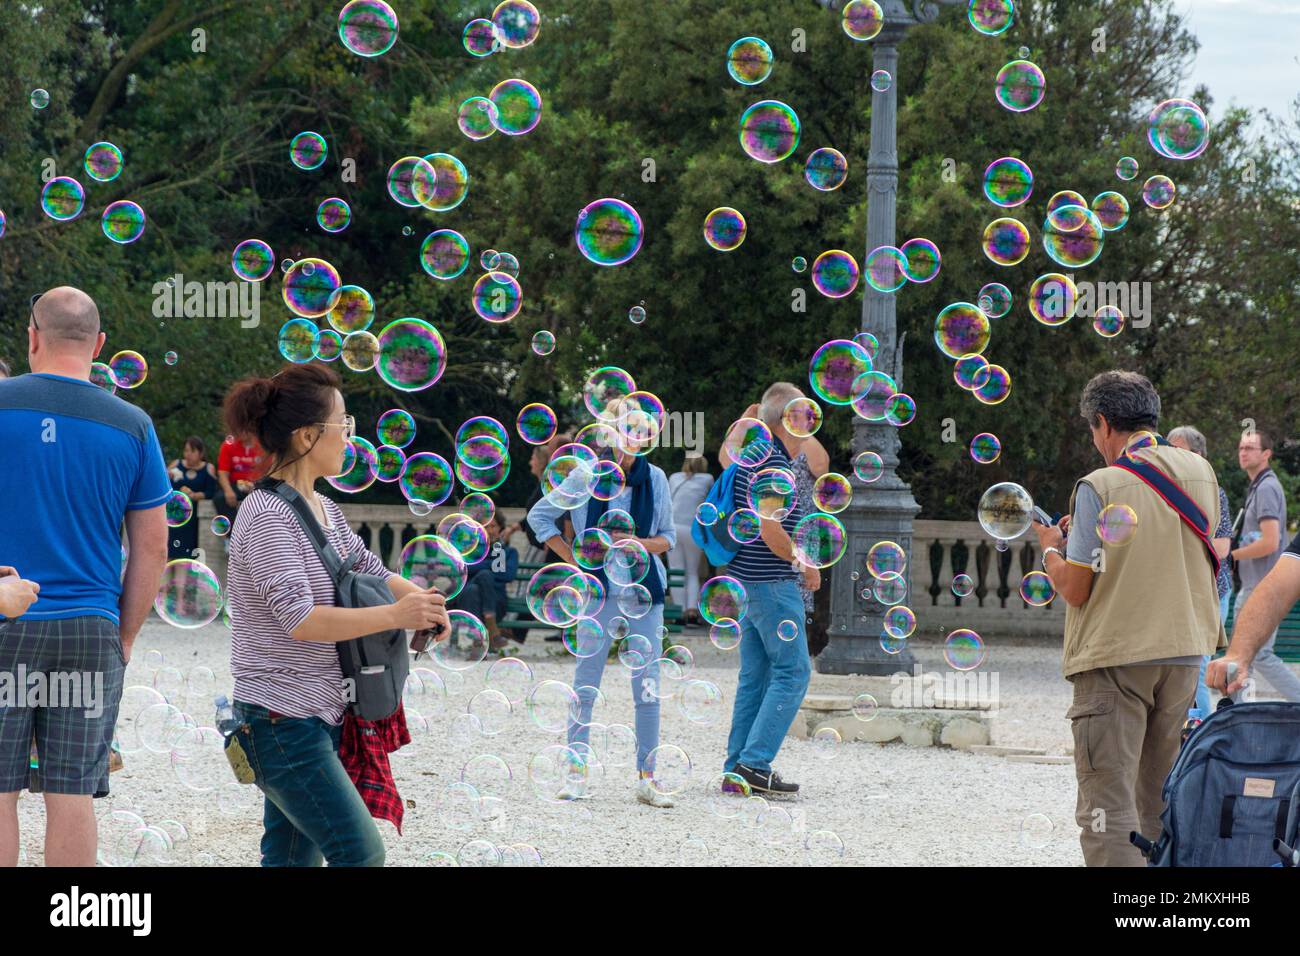 Rome, Italy - Oct 04, 2018: People rejoice in soap bubbles at Terrazza del Pincio in Rome Stock Photo